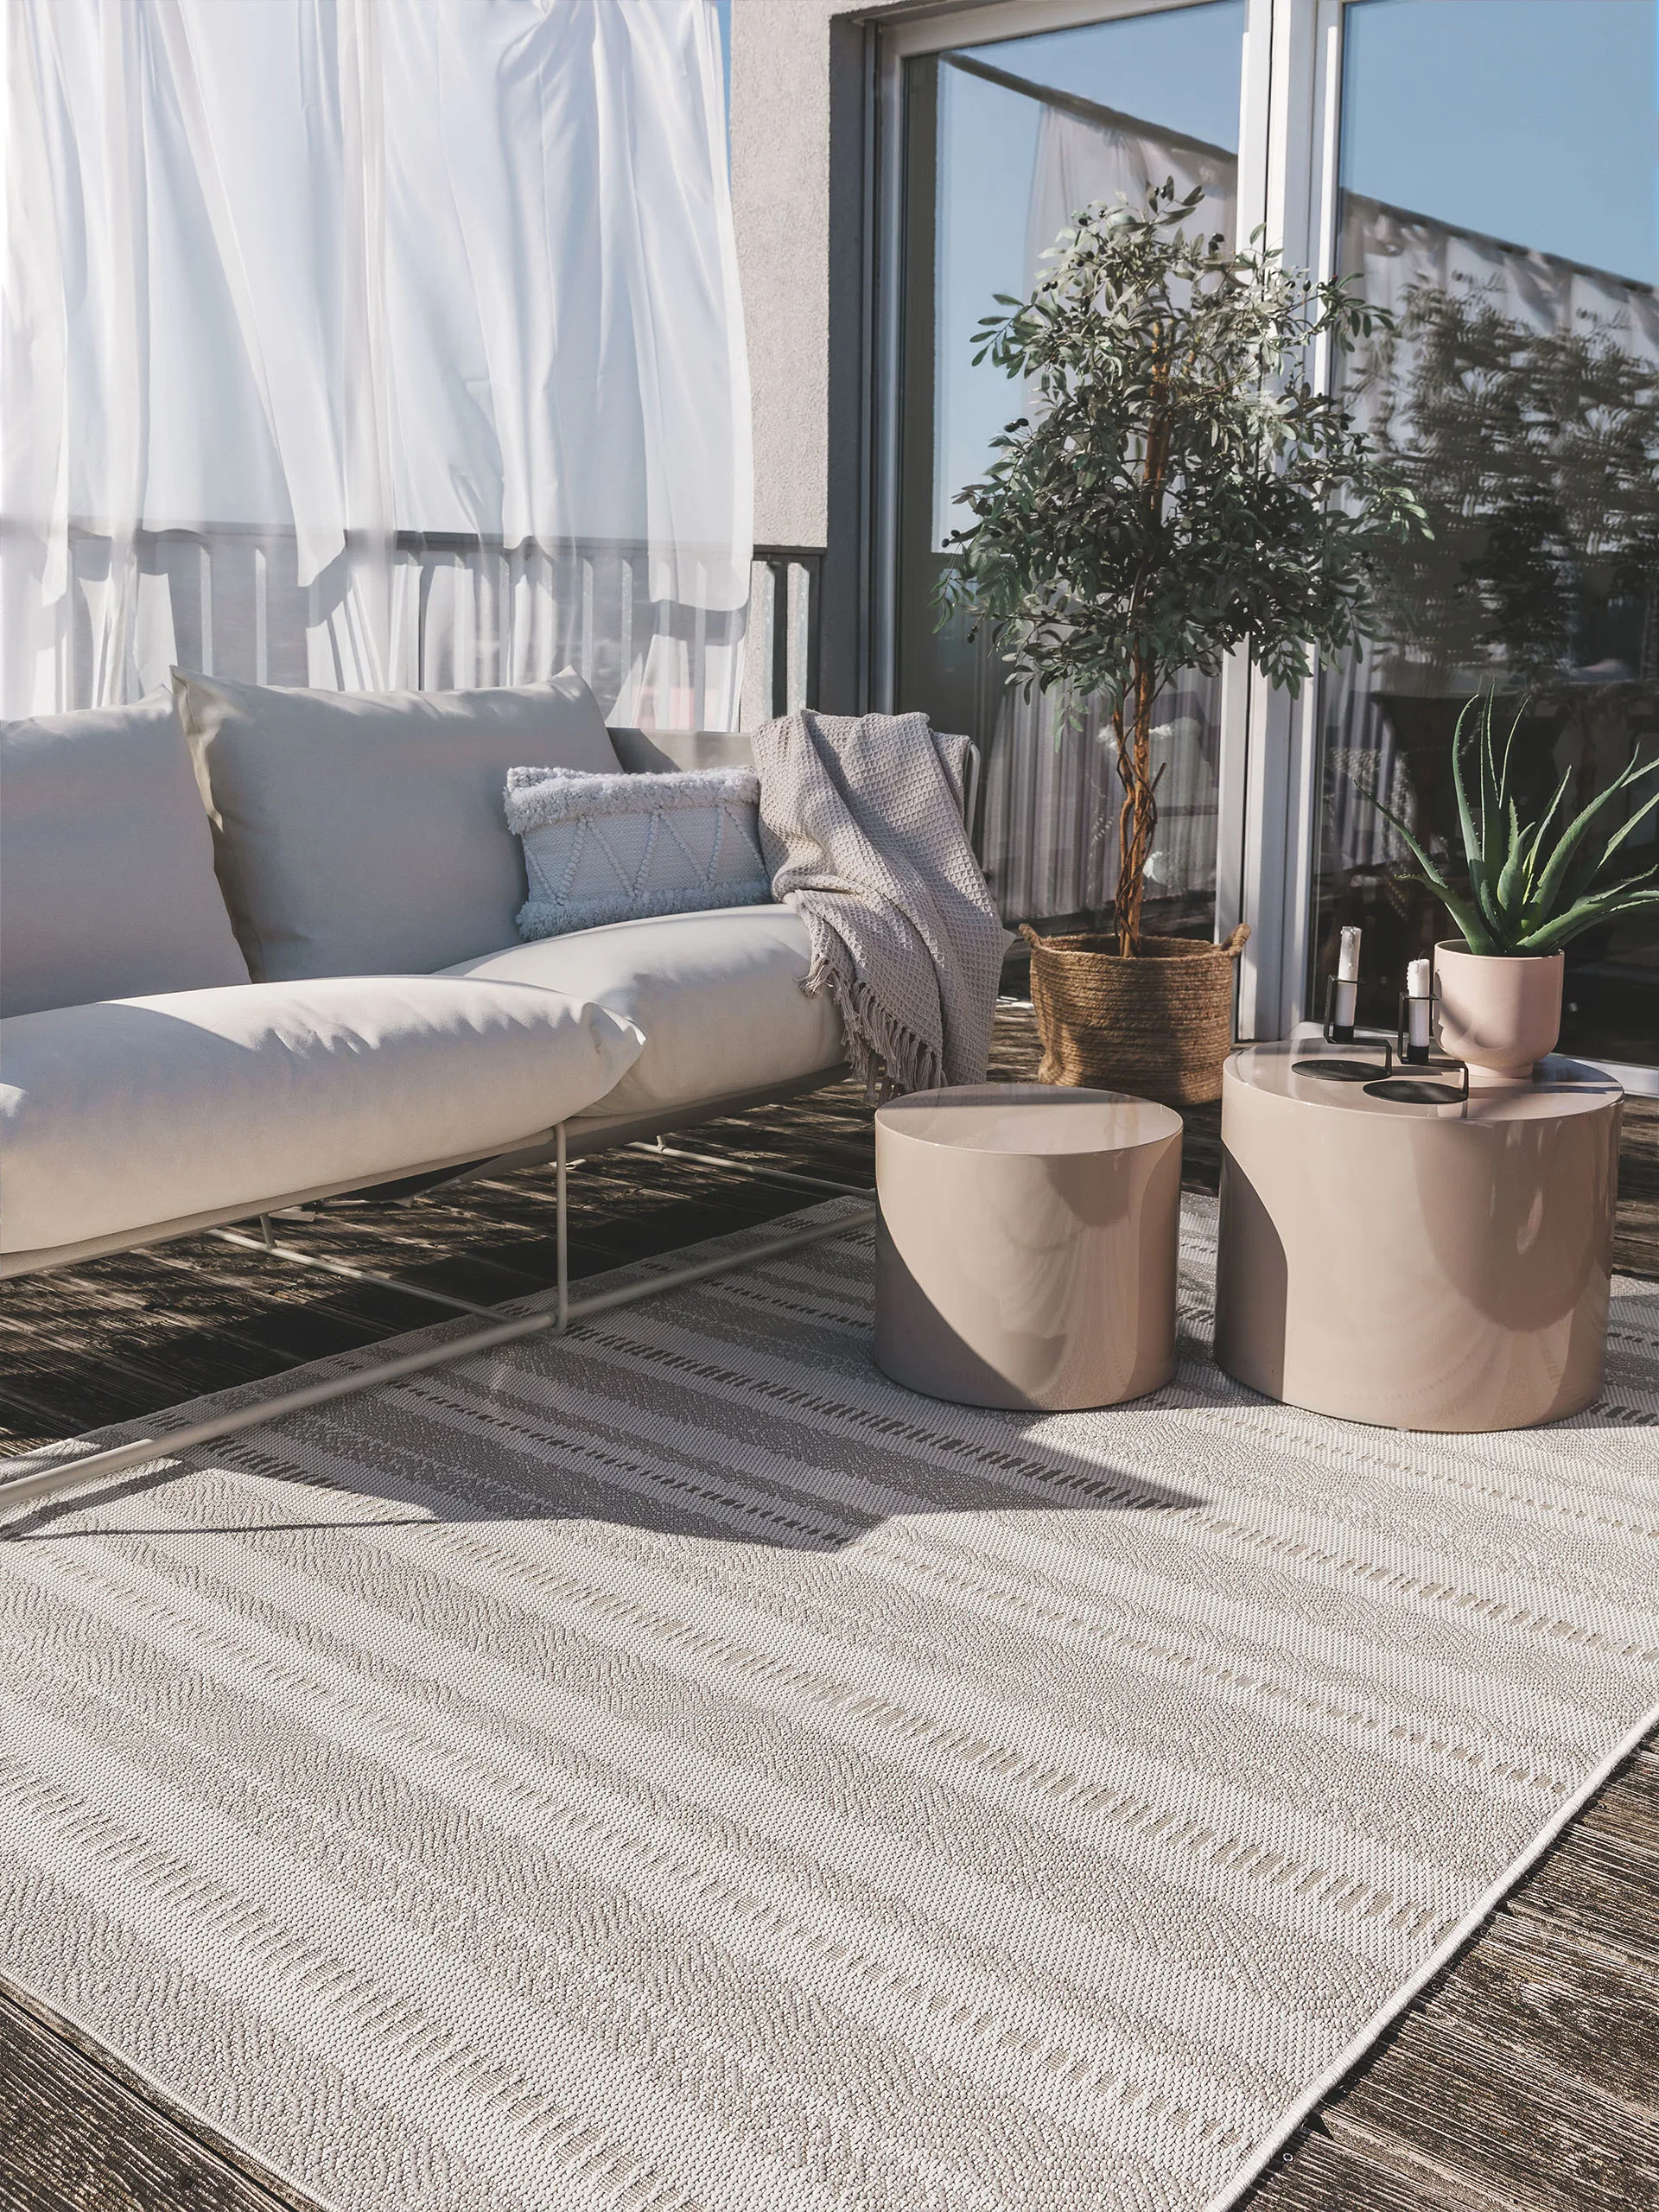 Helle Gartendeko mit grauem, großen Outdoor-Teppich, grauem Sofa und zwei beigen Beistelltischen und einer großen Topfpflanze mit weißen Blüten